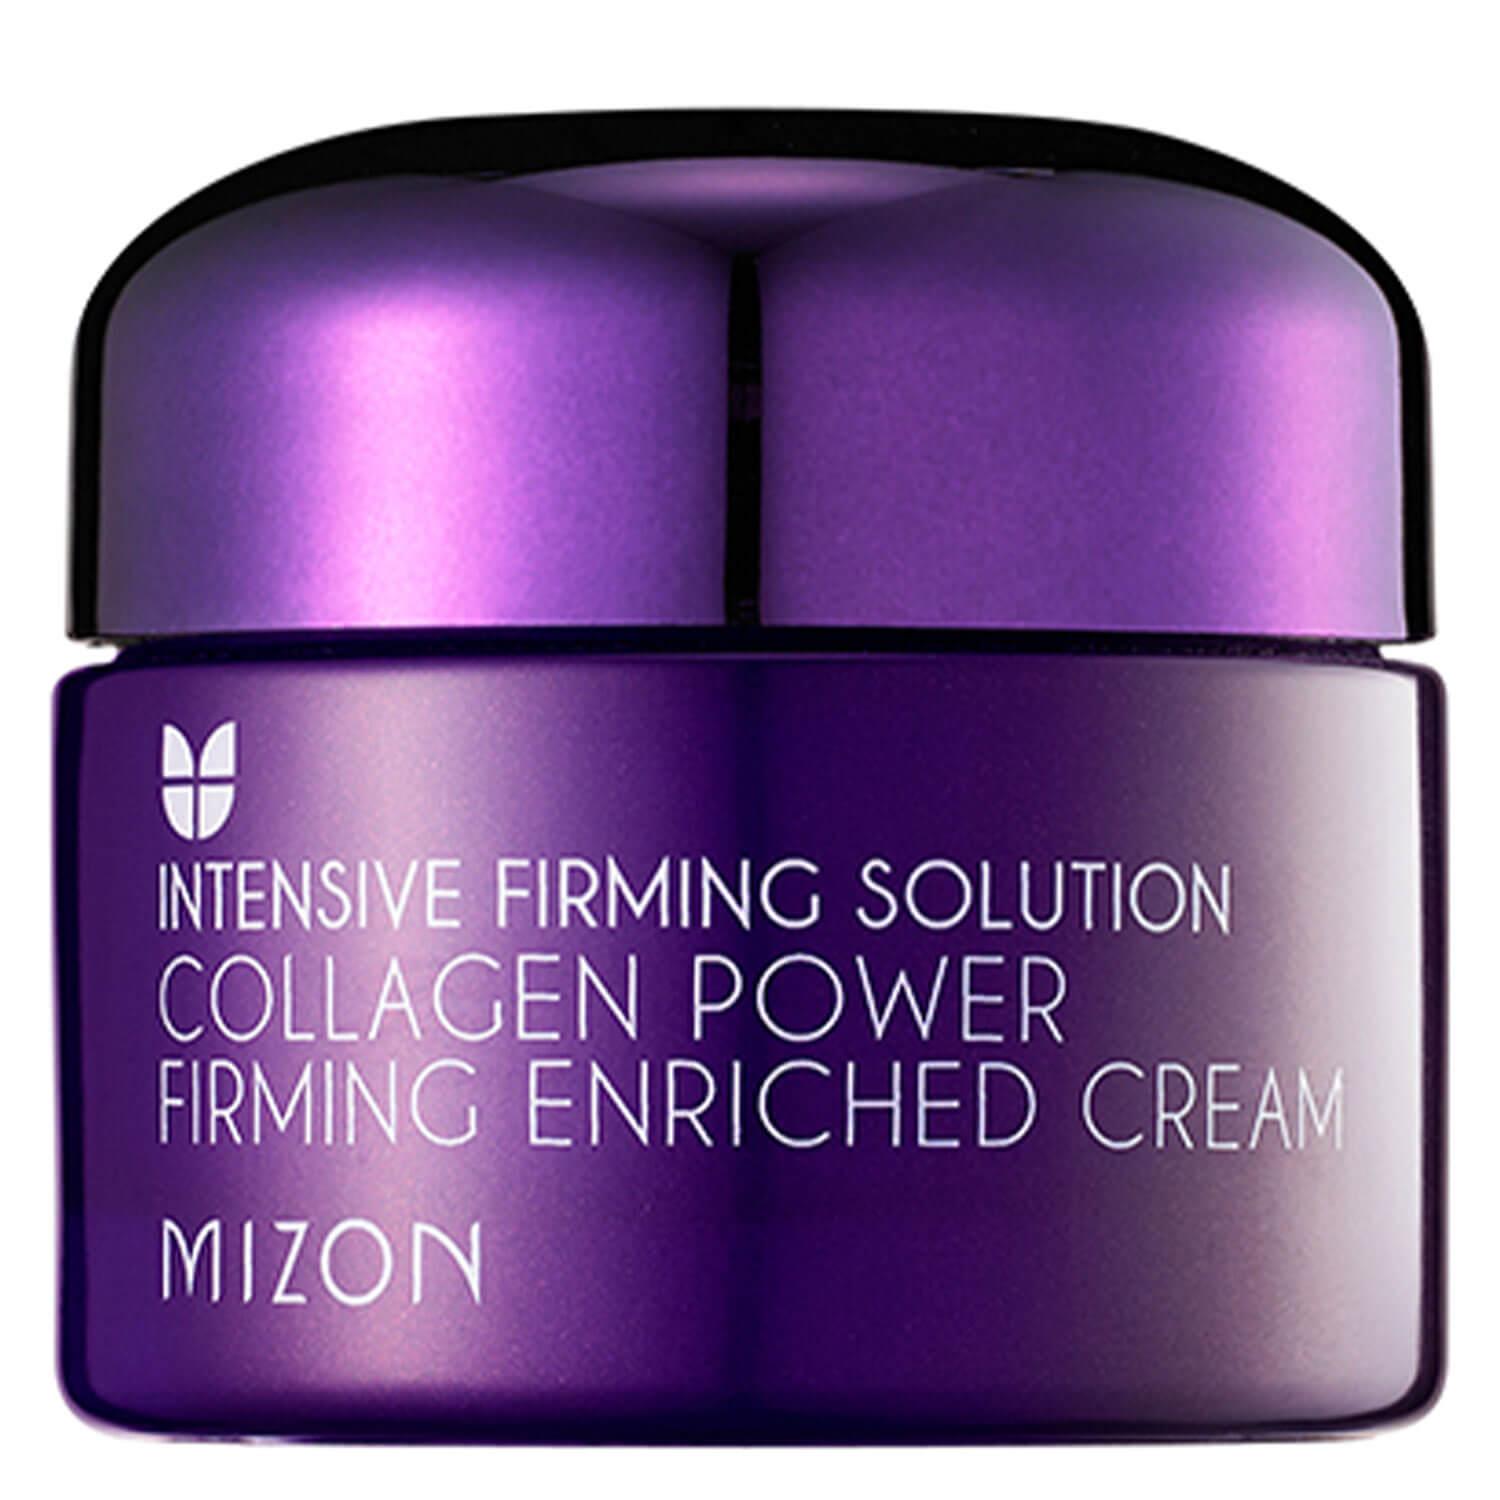 MIZON - Collagen Power Firming Enriched Cream